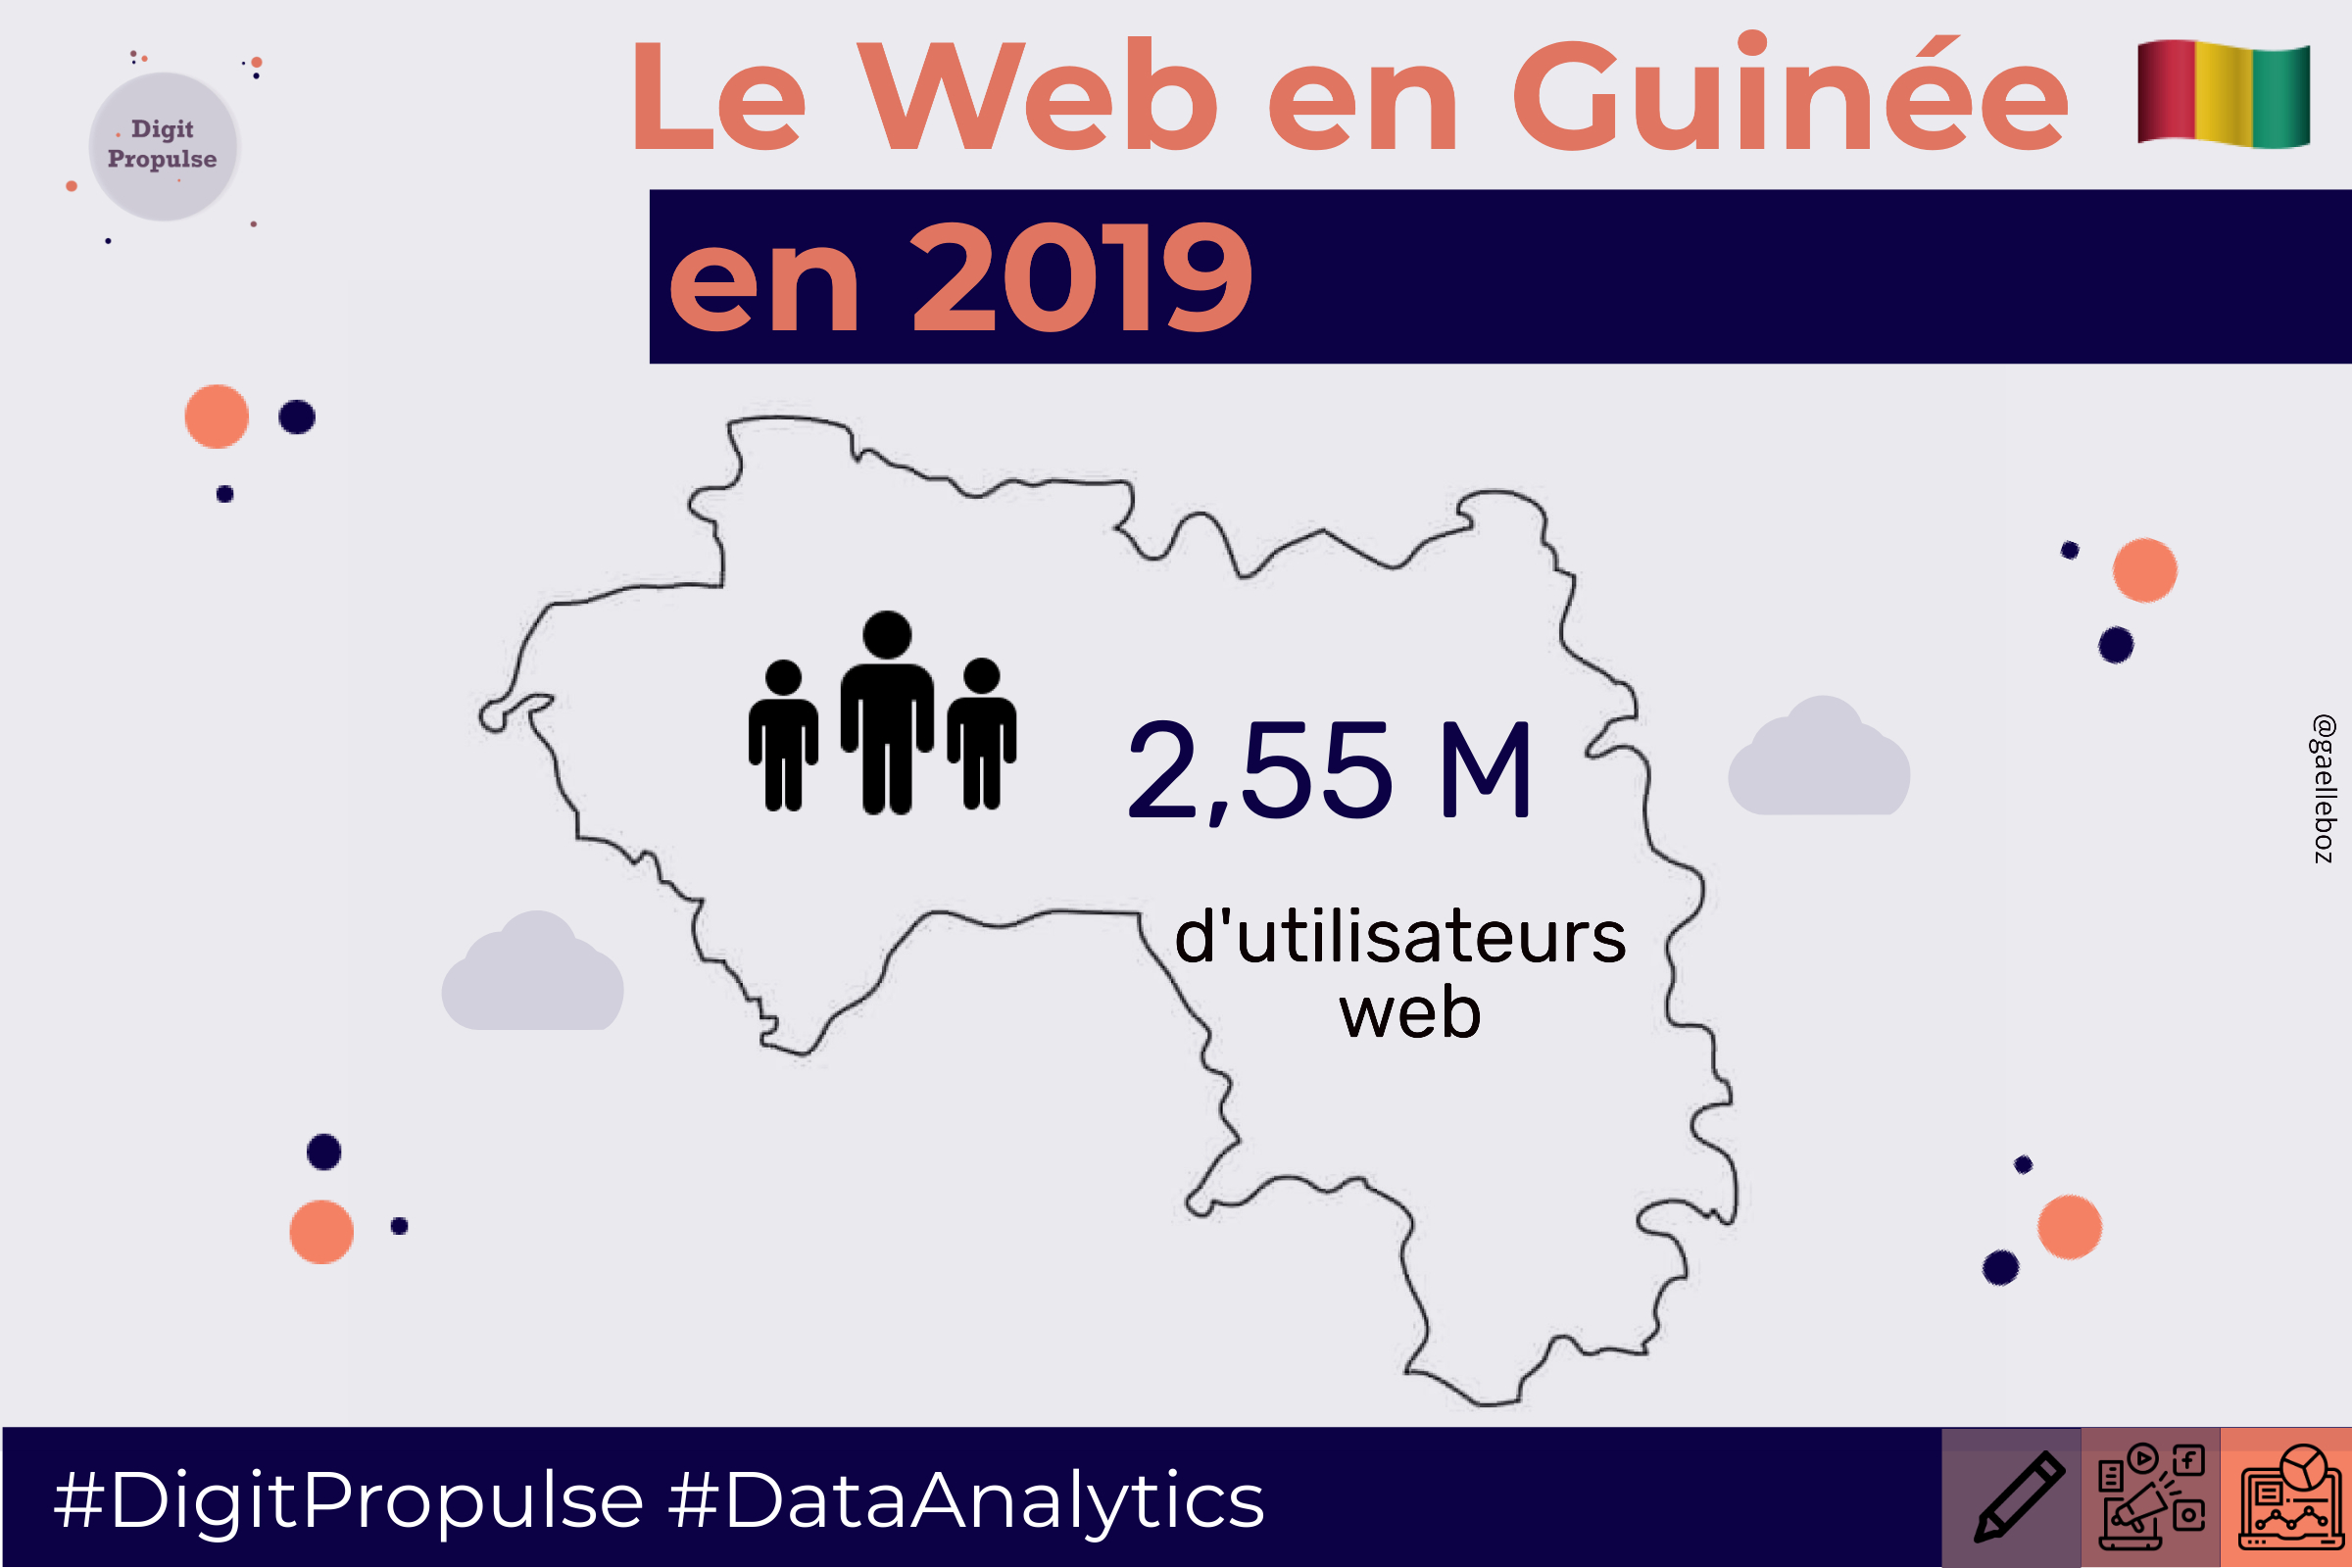 Le Web en Guinée en 2019